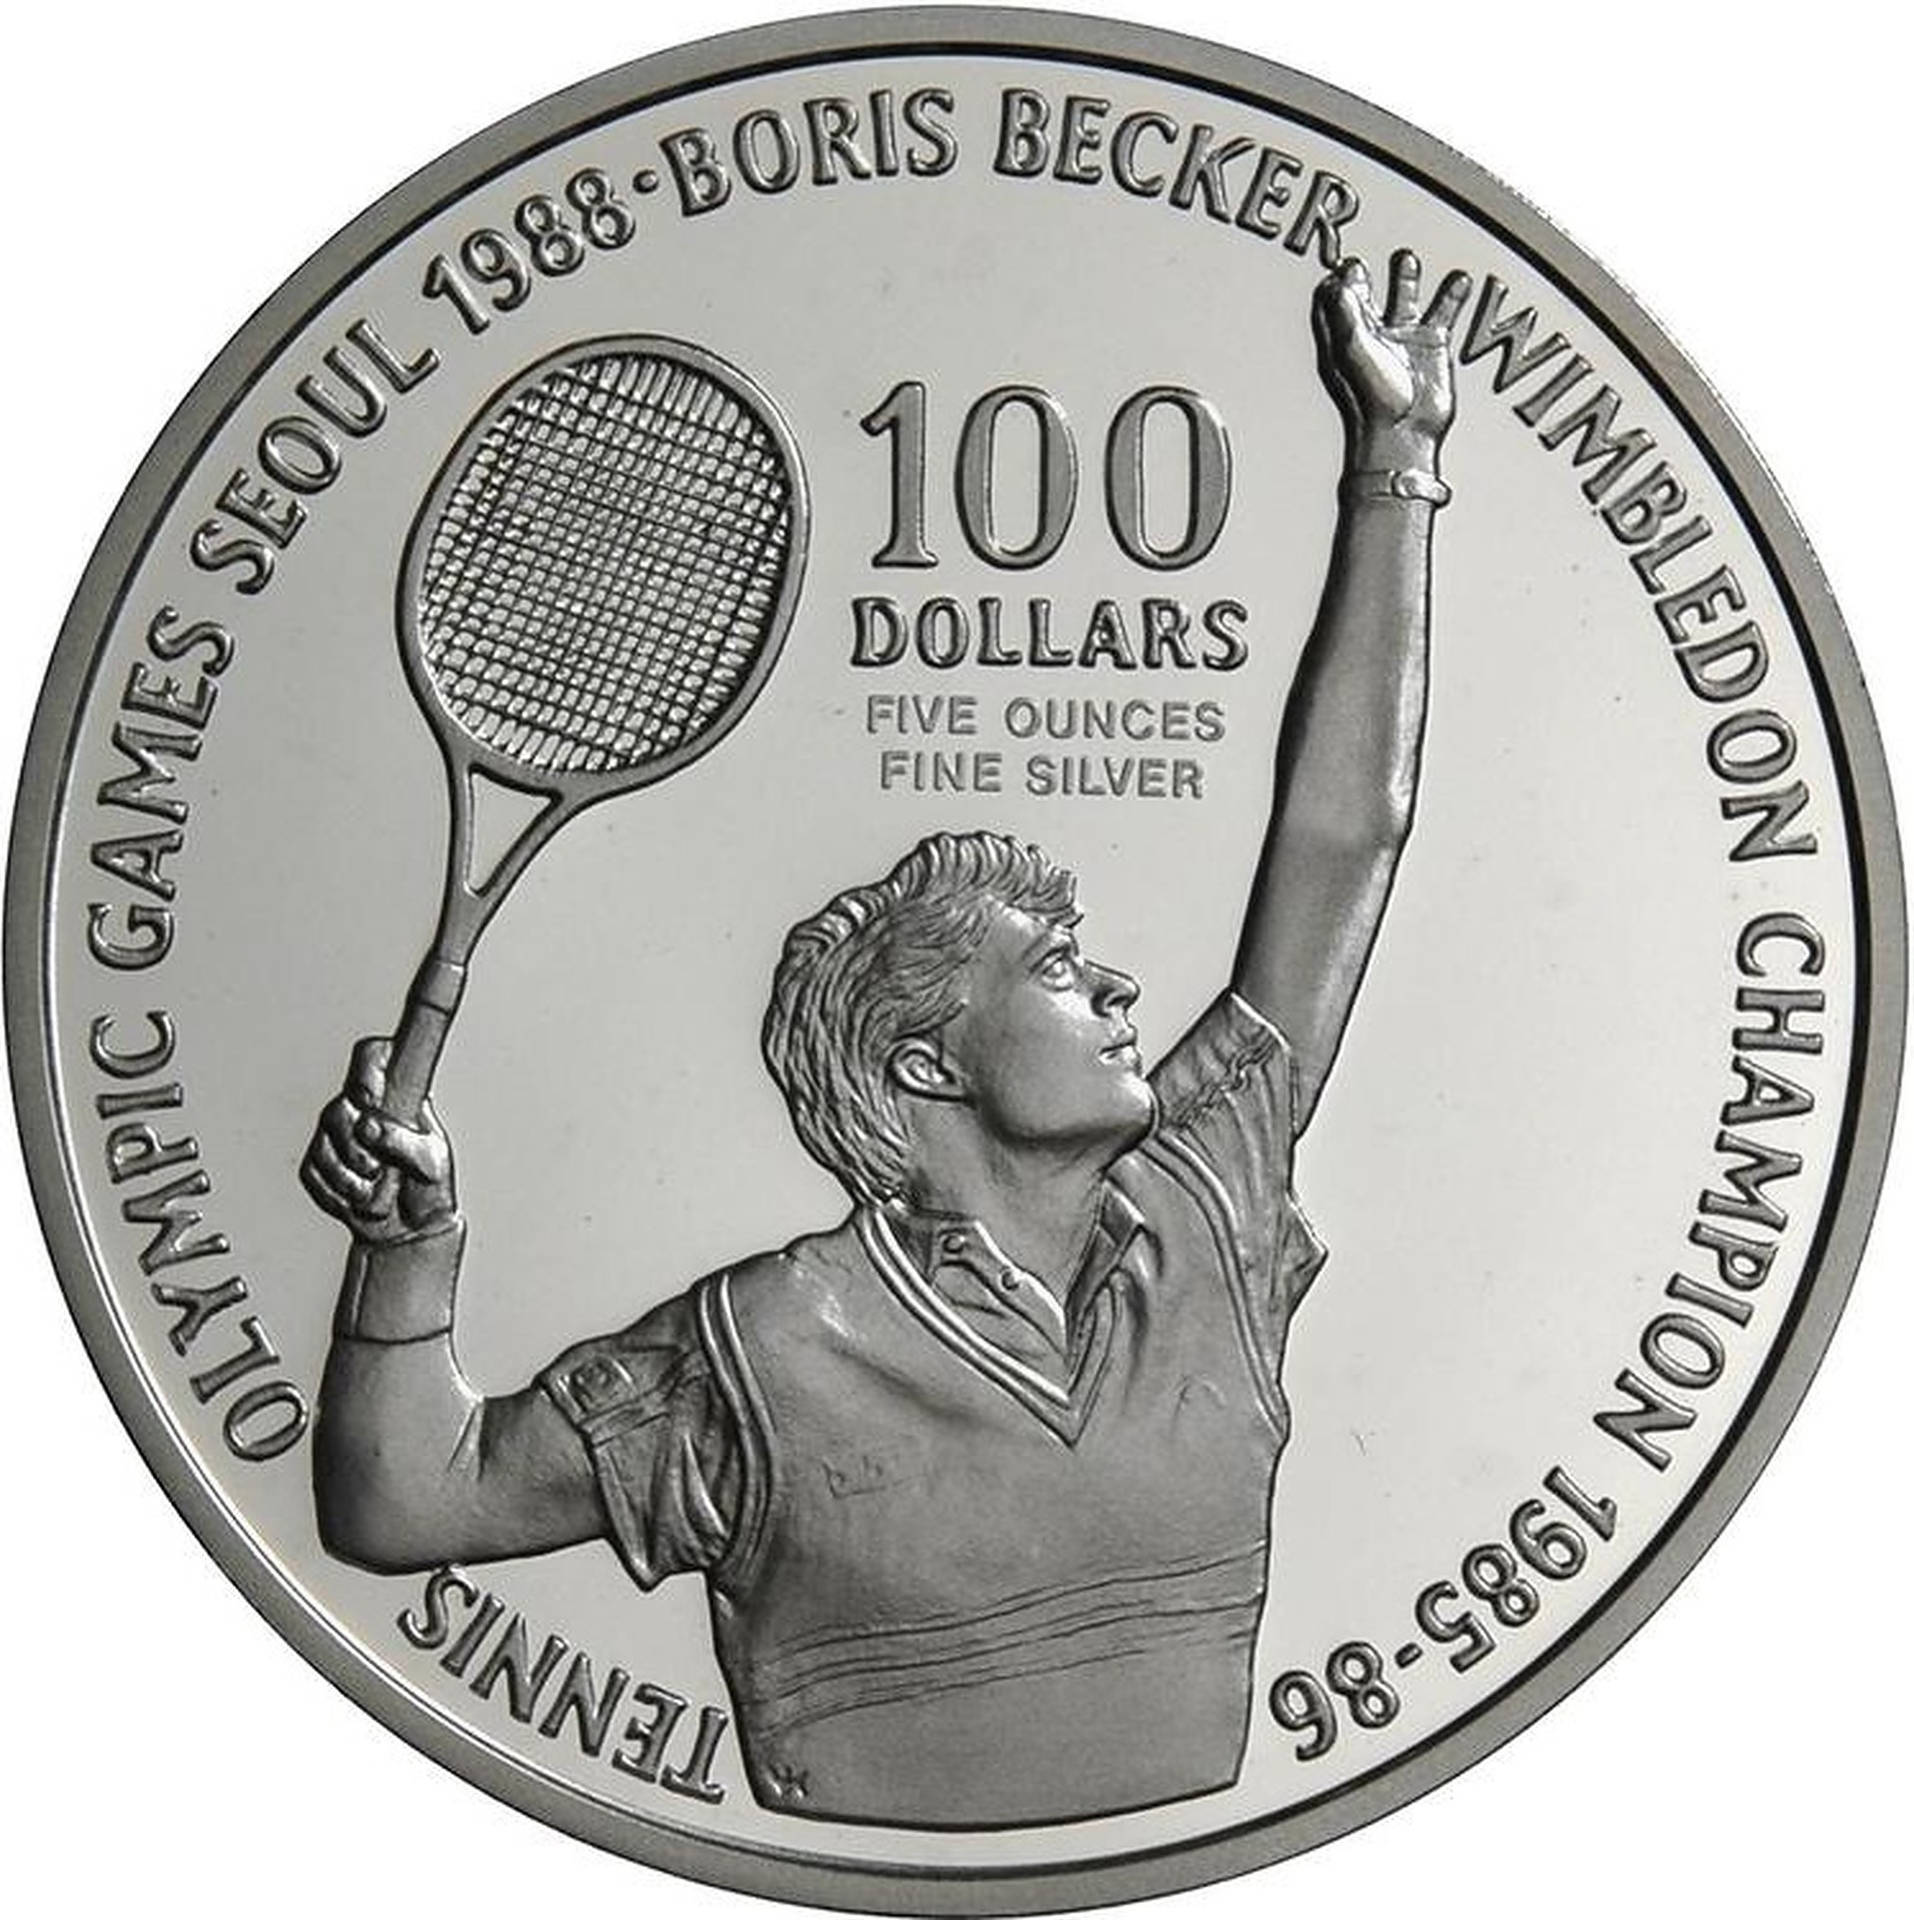 Boris Becker Silver Coin Background